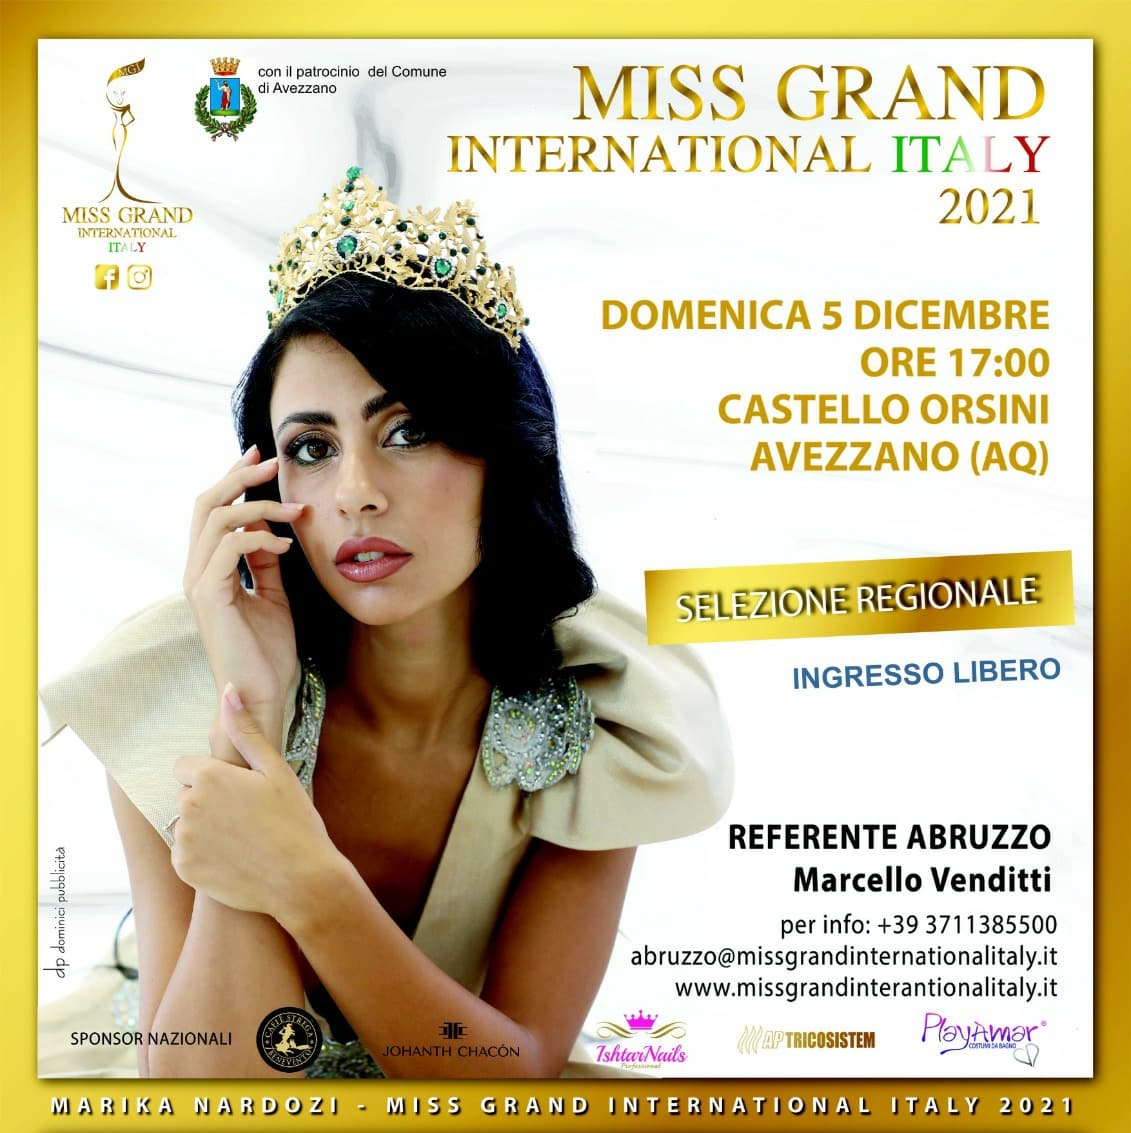 Arriva ad Avezzano il concorso Miss Grand International Italy 2021: 15 modelle si contenderanno le varie fasce domani al Castello Orsini